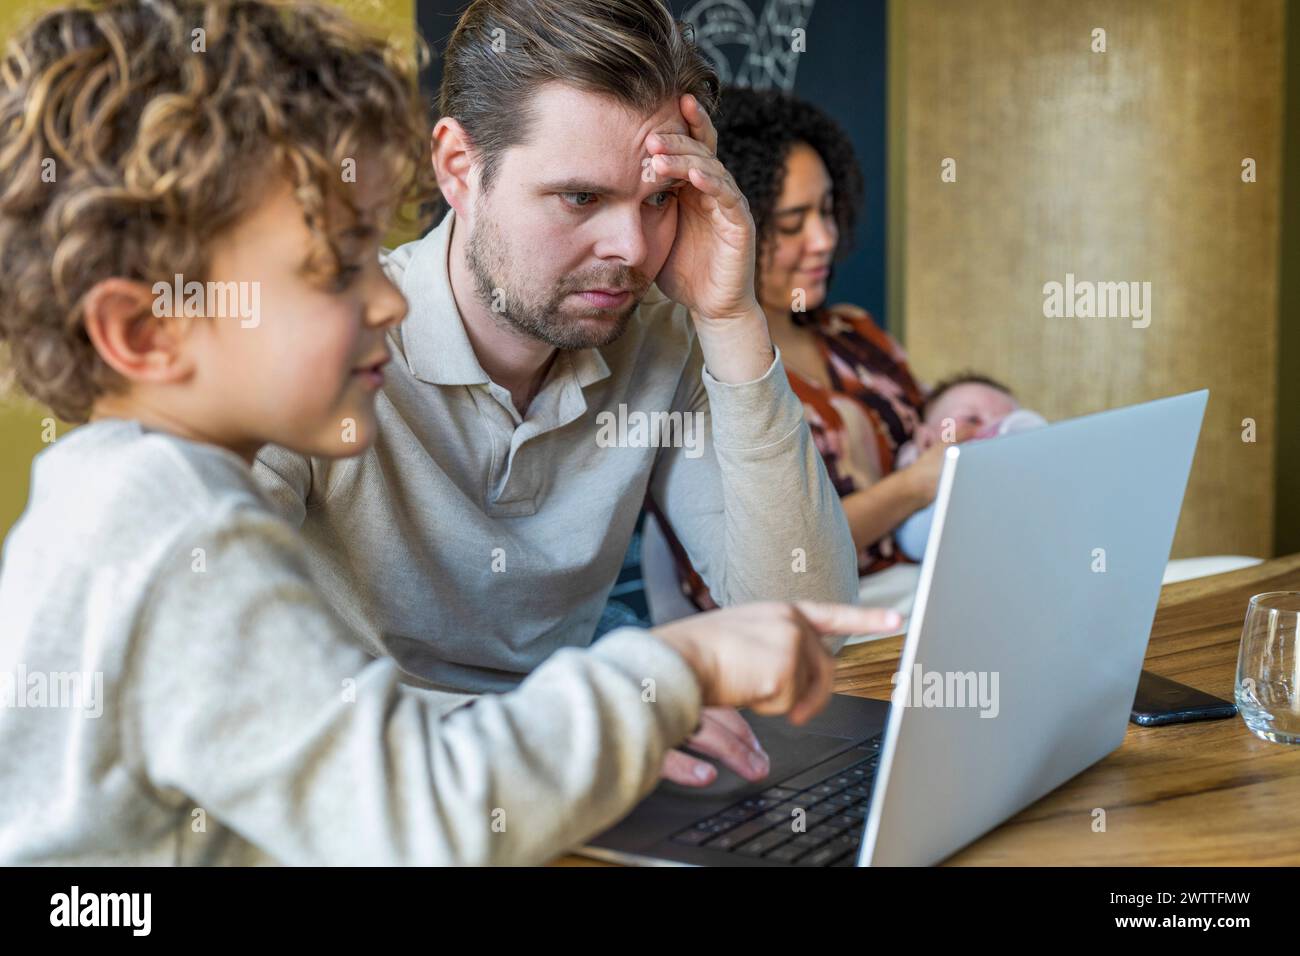 Un bambino fa notare qualcosa su un notebook a un uomo adulto concentrato mentre una donna lavora in background. Foto Stock